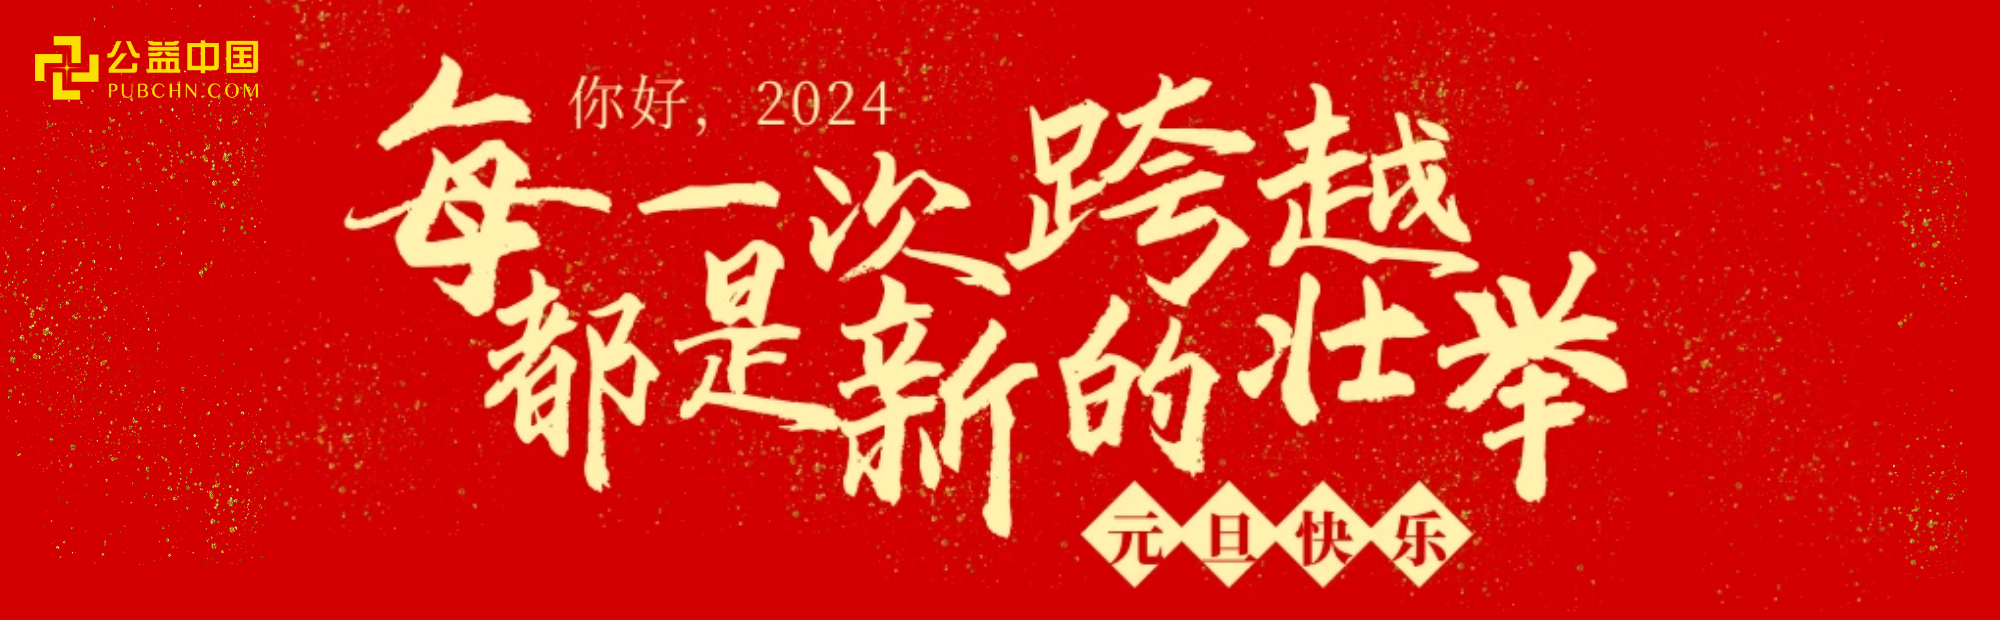 2024，公益中國網與你 “益”起奔赴美好！